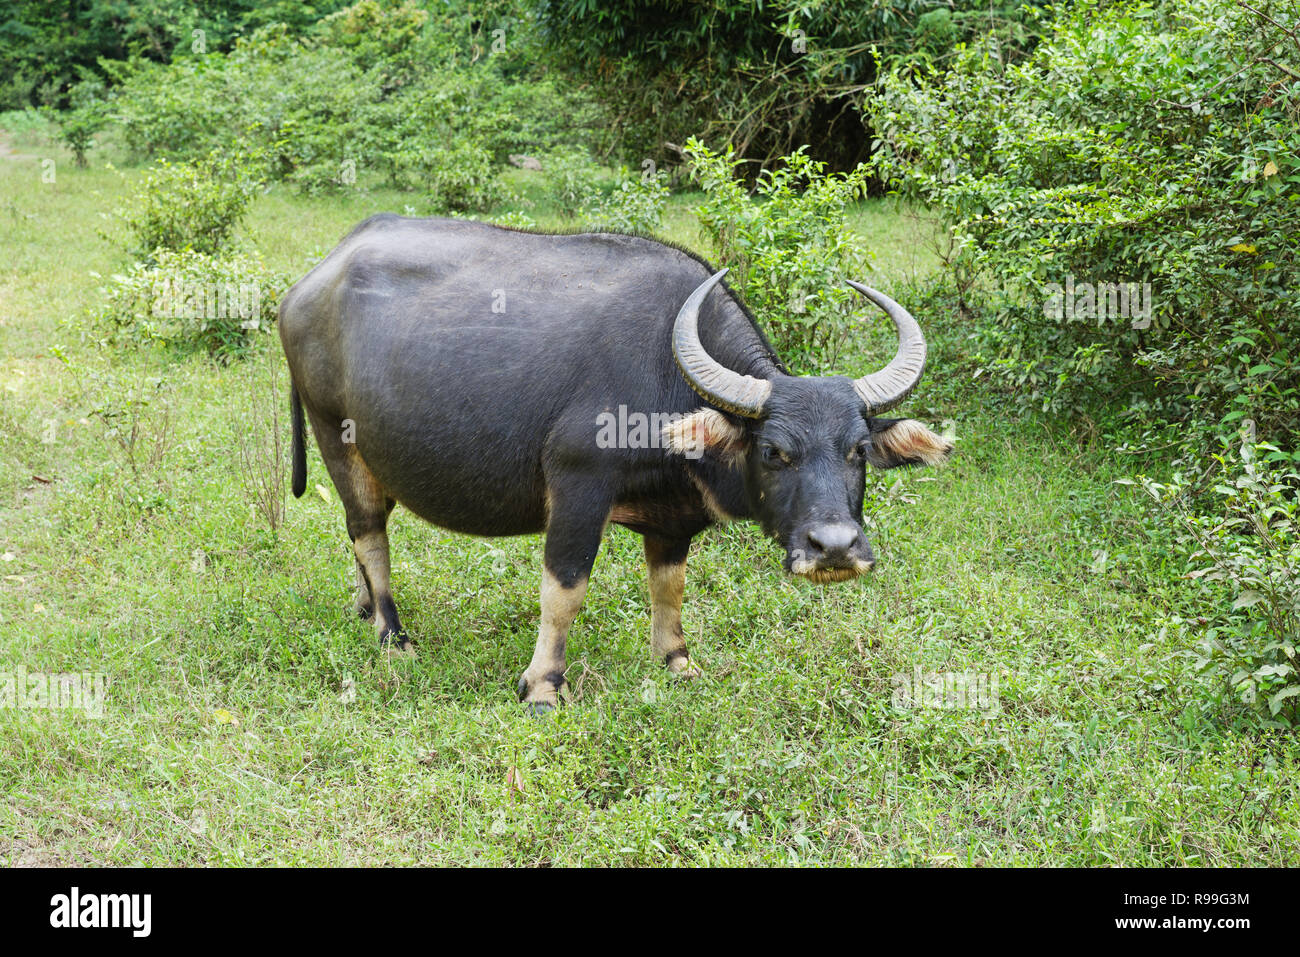 Asian Water Buffalo or Bubalus bubalis in Laos Stock Photo - Alamy